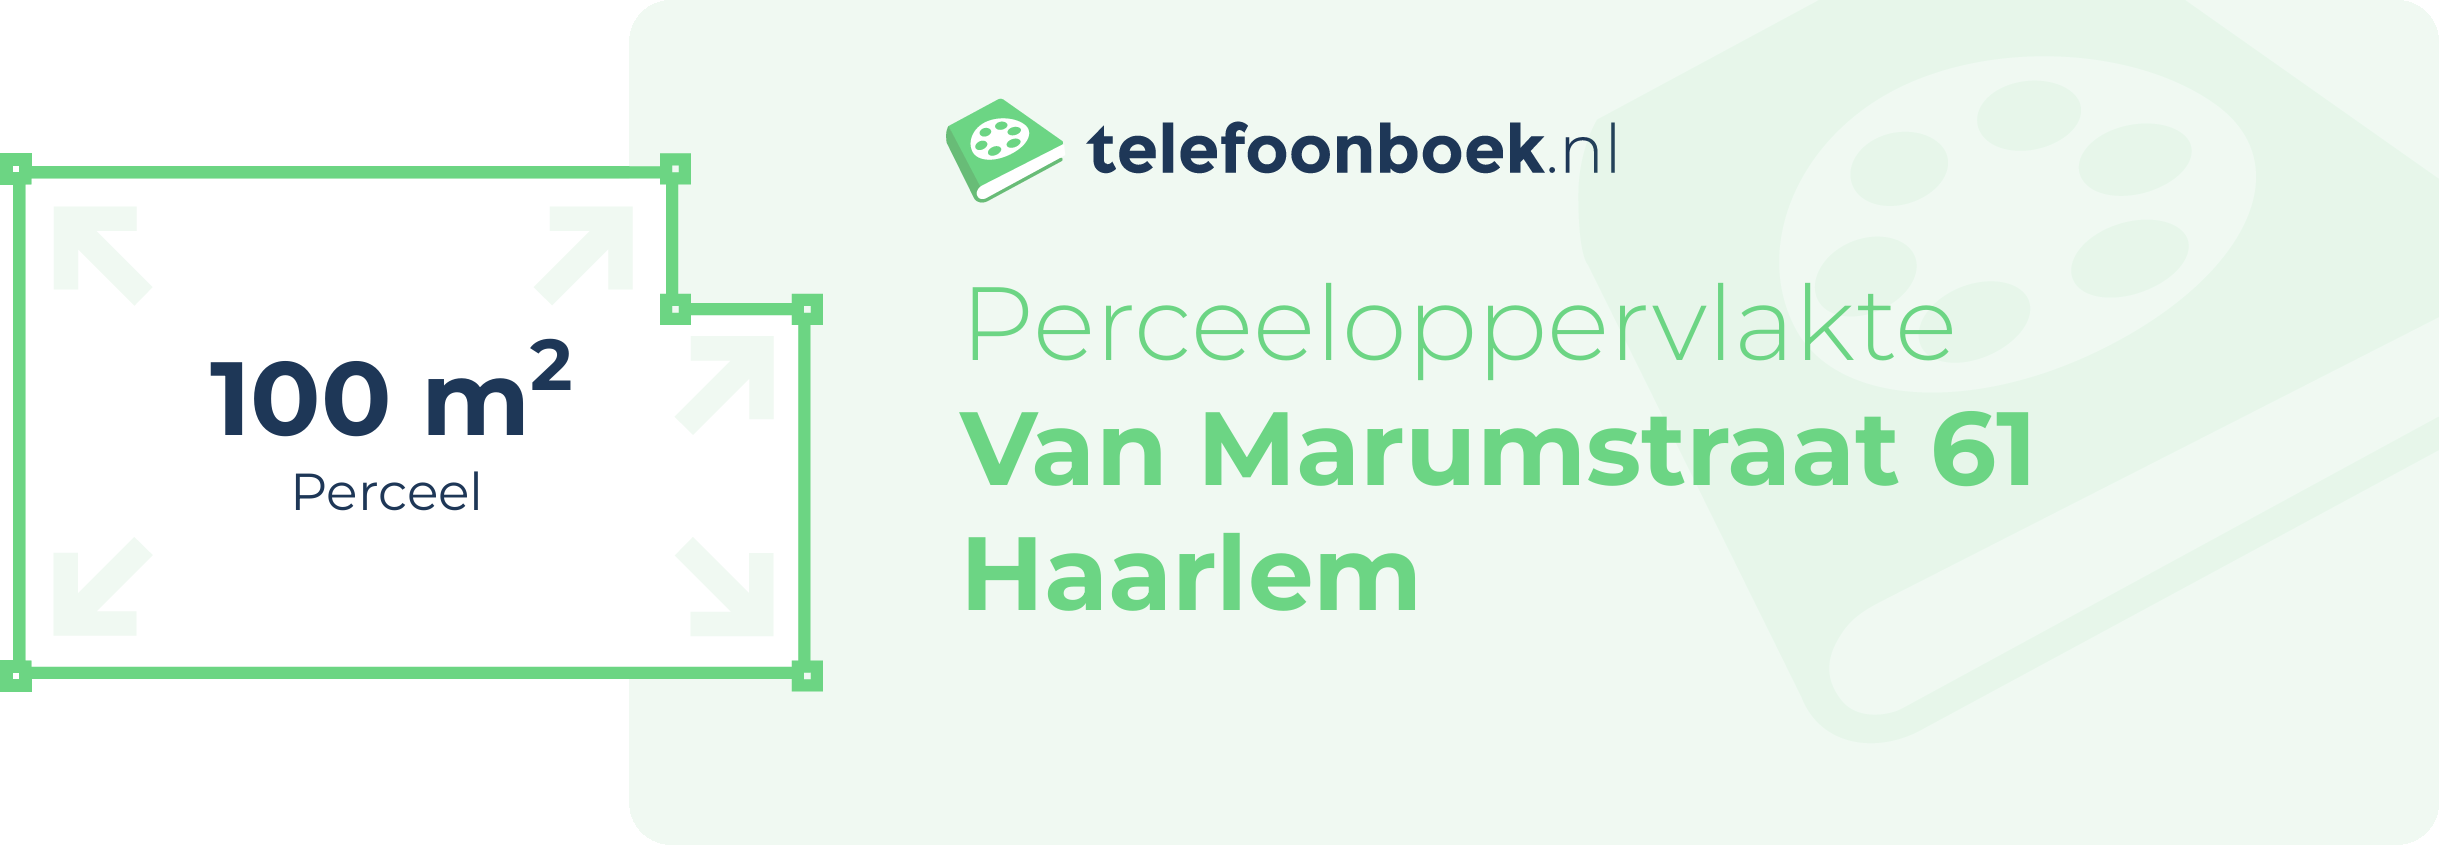 Perceeloppervlakte Van Marumstraat 61 Haarlem